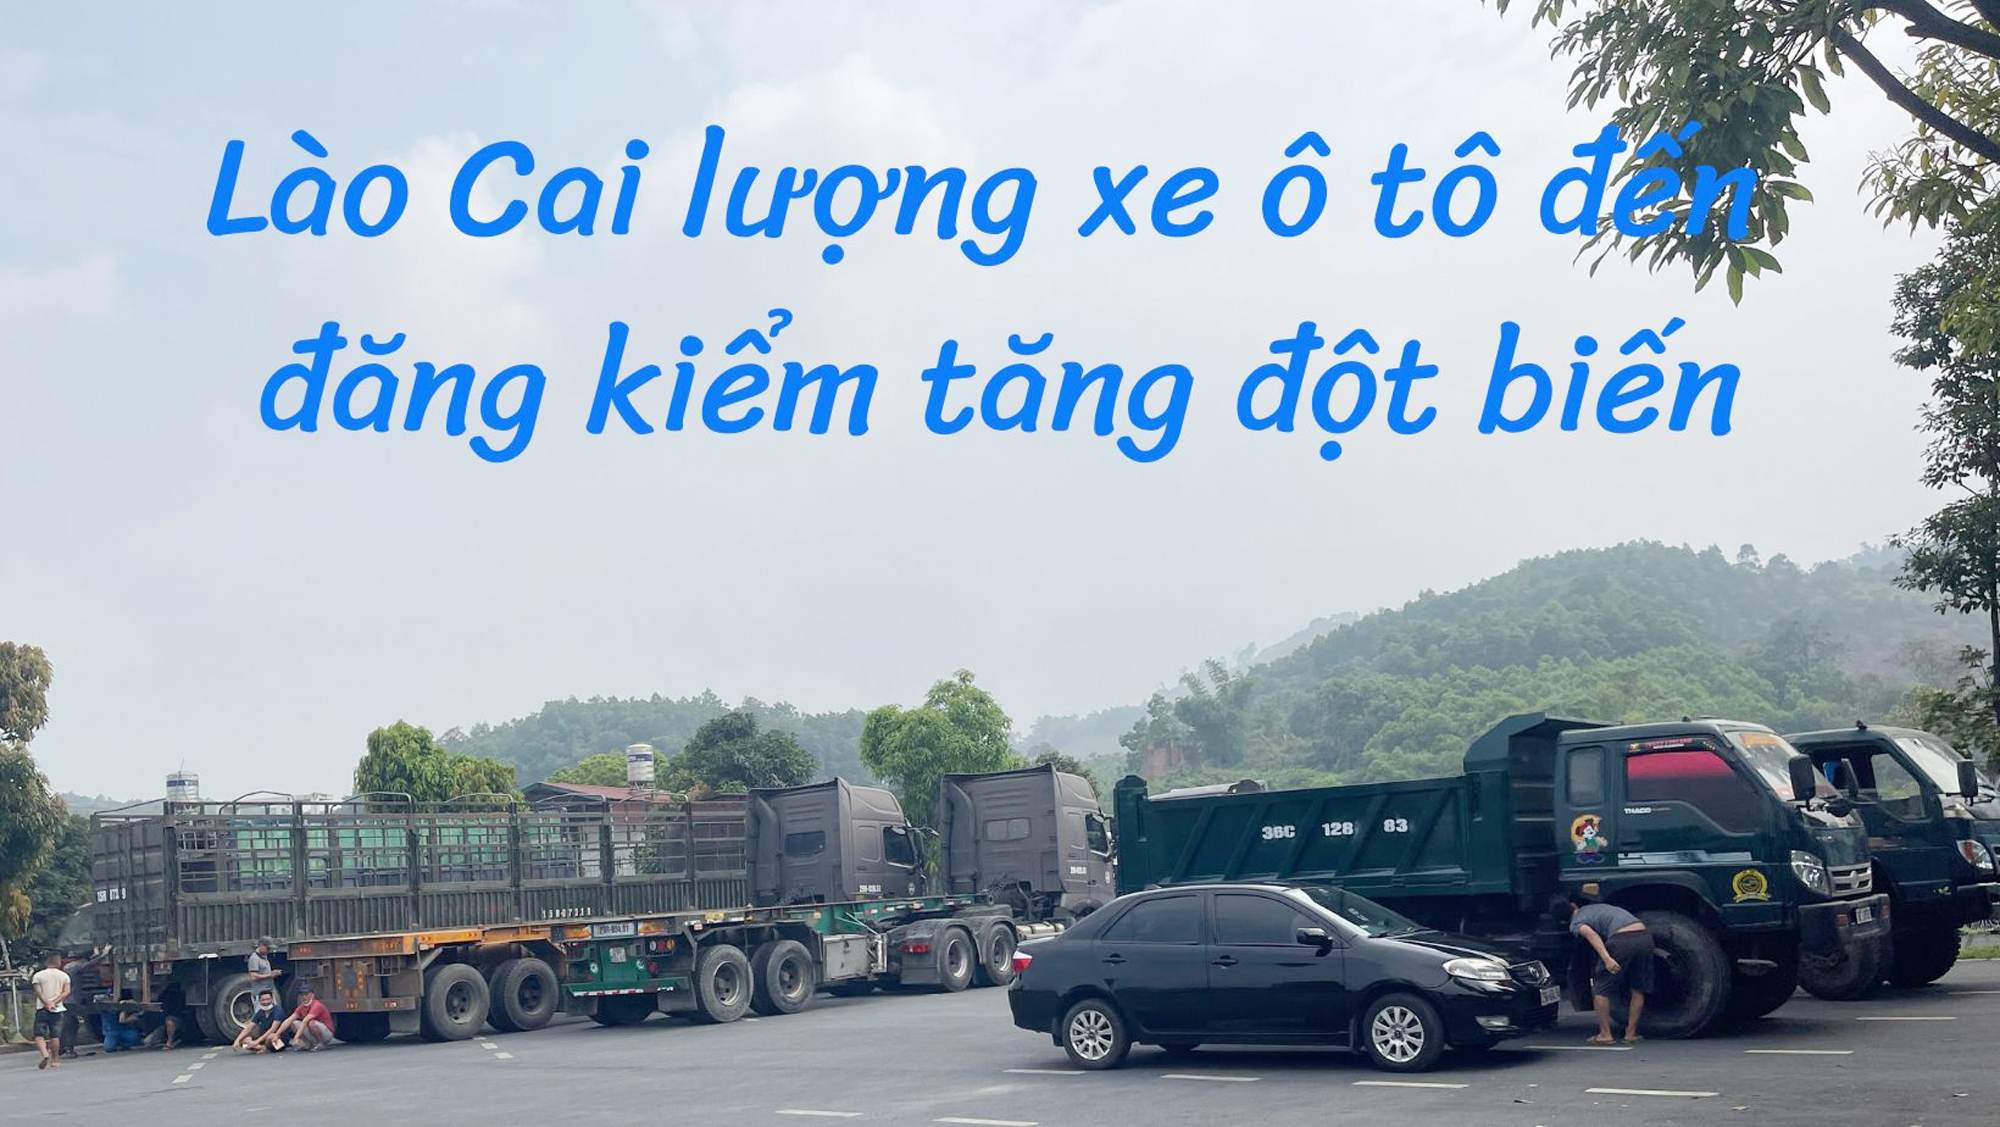 Lào Cai: Lượng xe ô tô đến đăng kiểm tăng đột biến